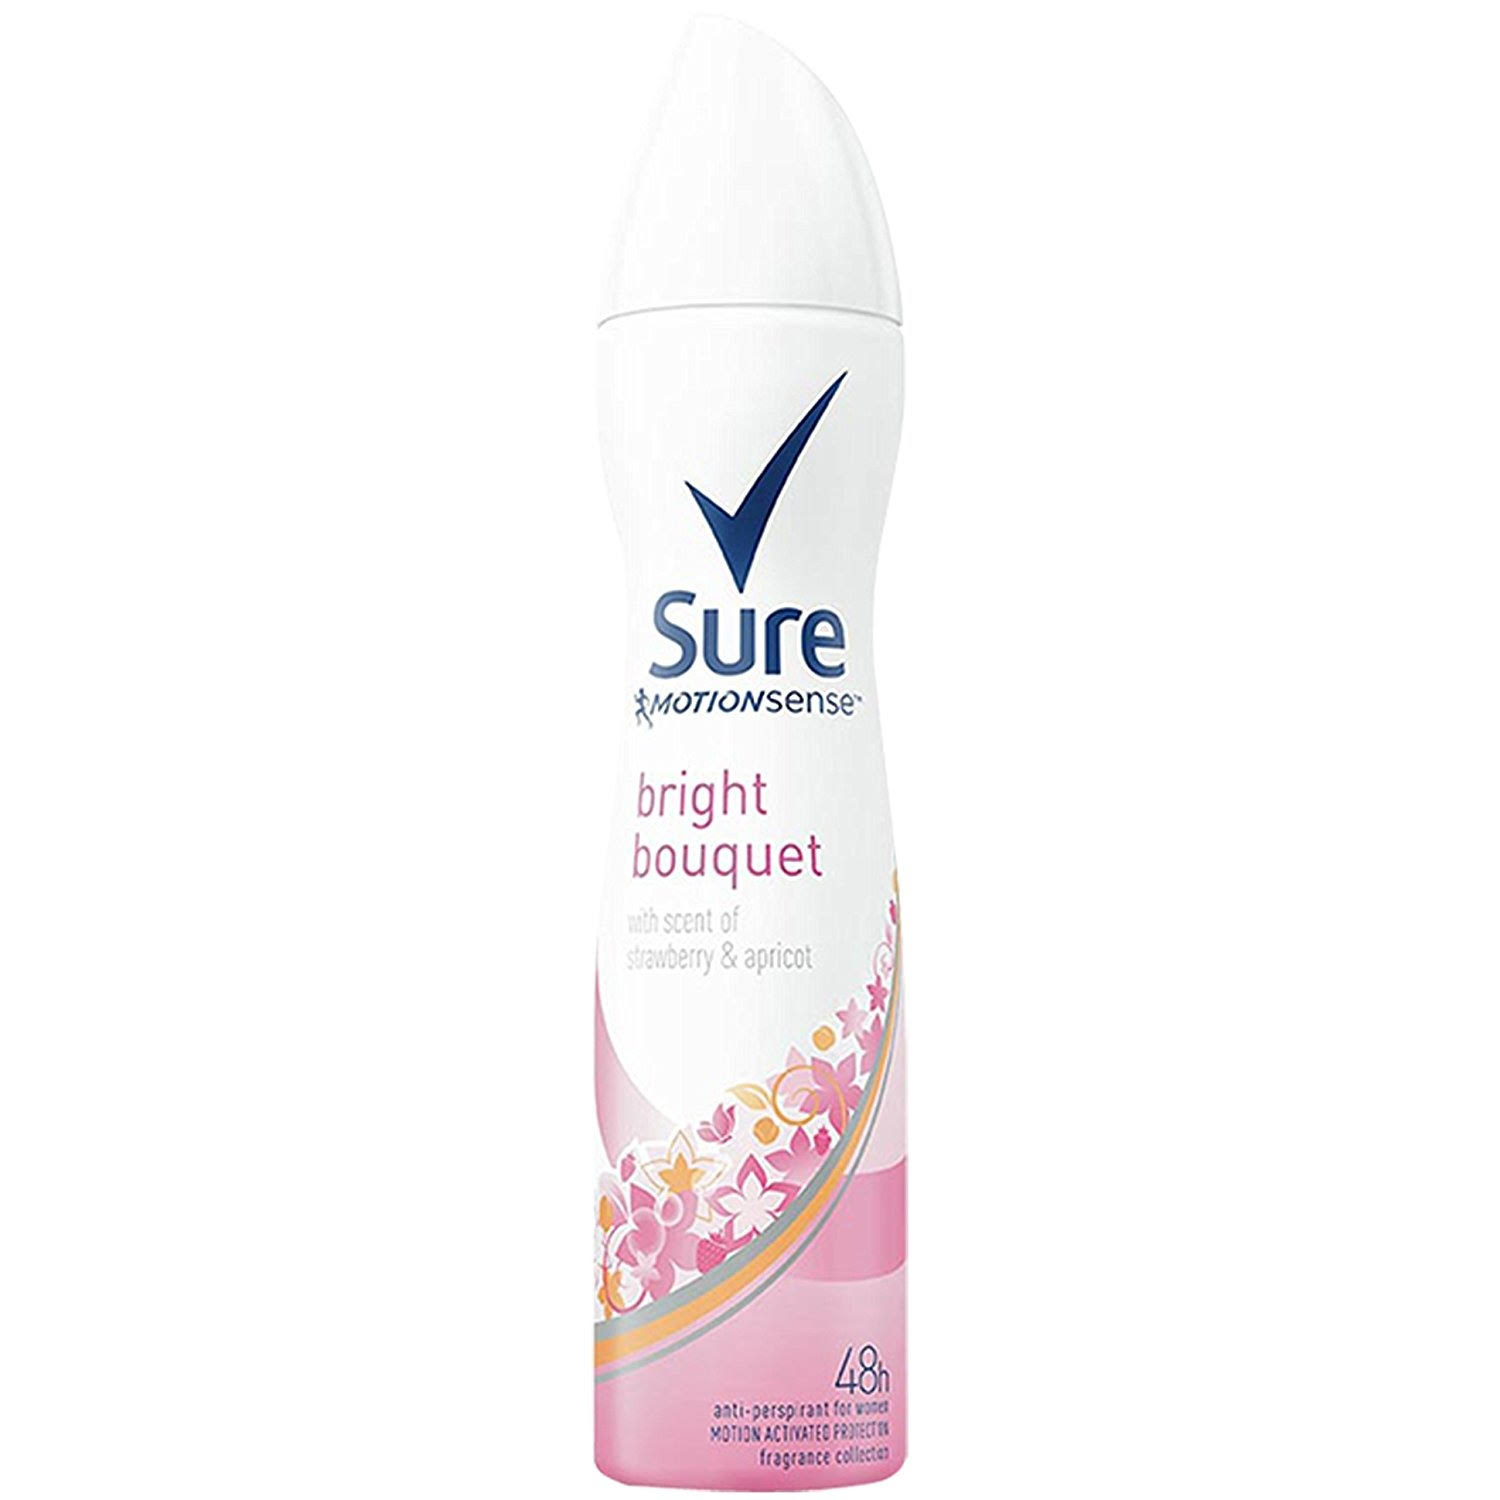 Sure Antiperspirant Deodorant Aerosol - Bright Bouquet, 250ml